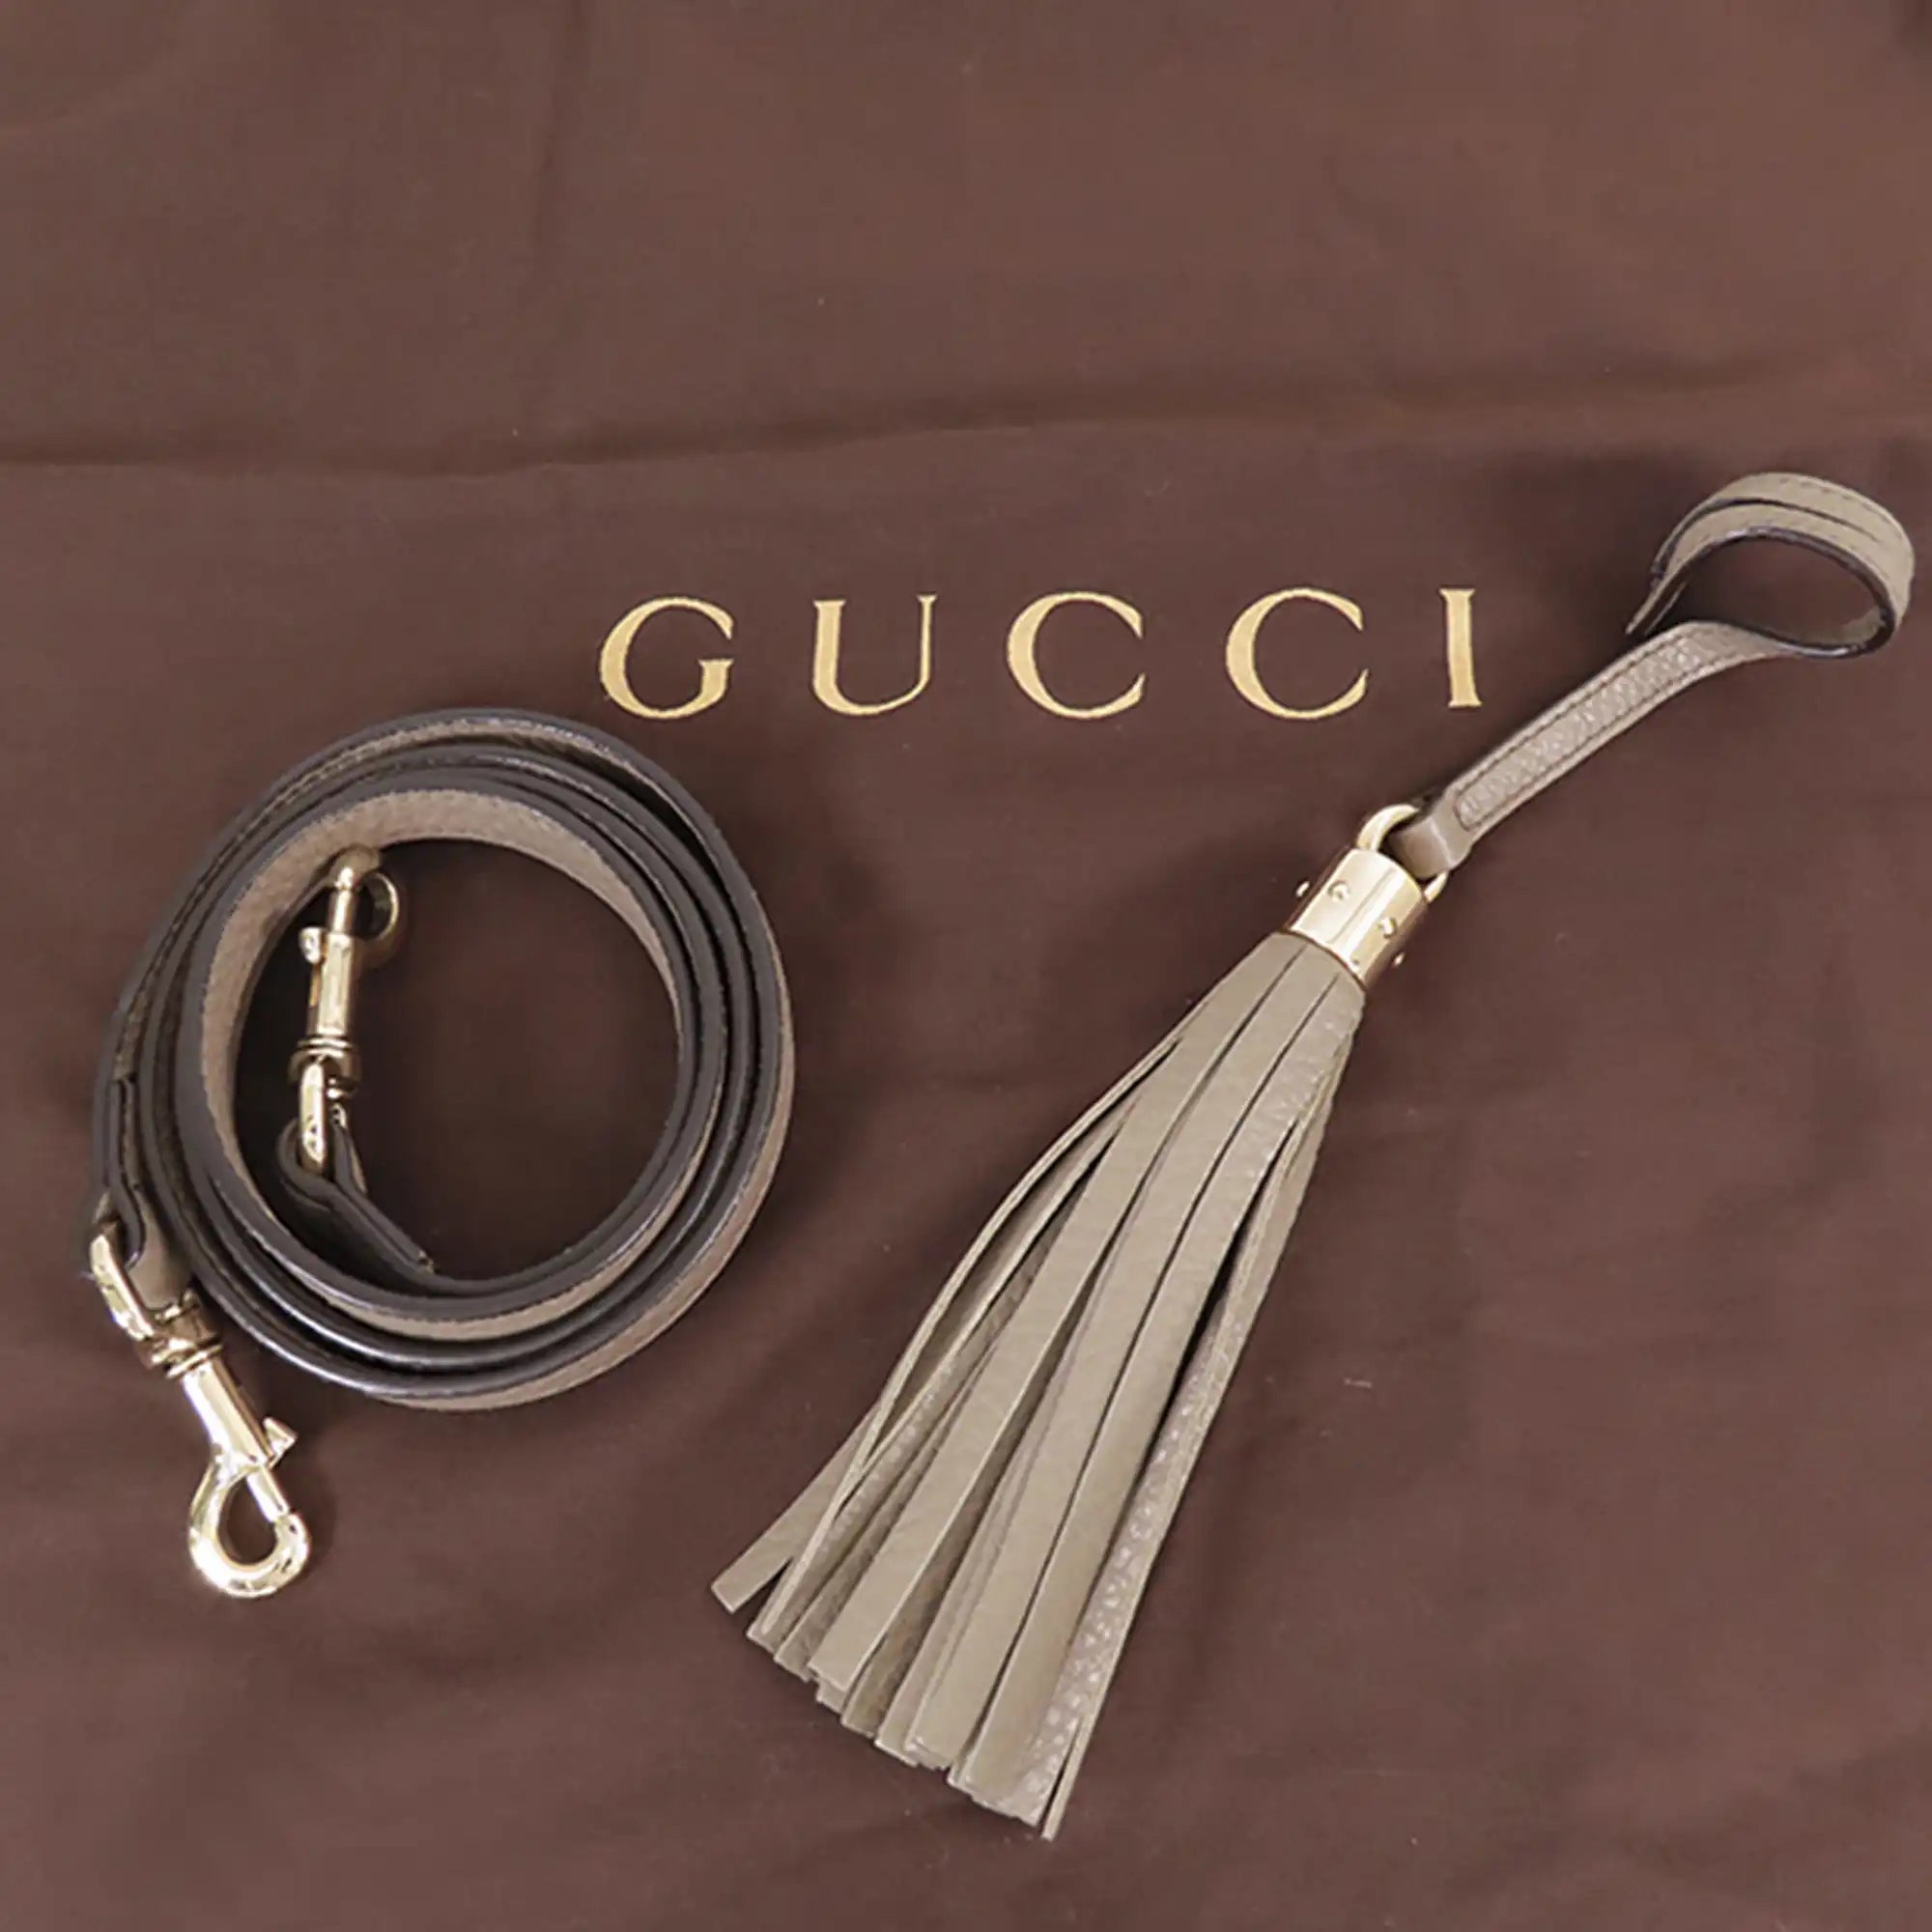 Gucci Soho Cellarius Tote Medium Brown Leather